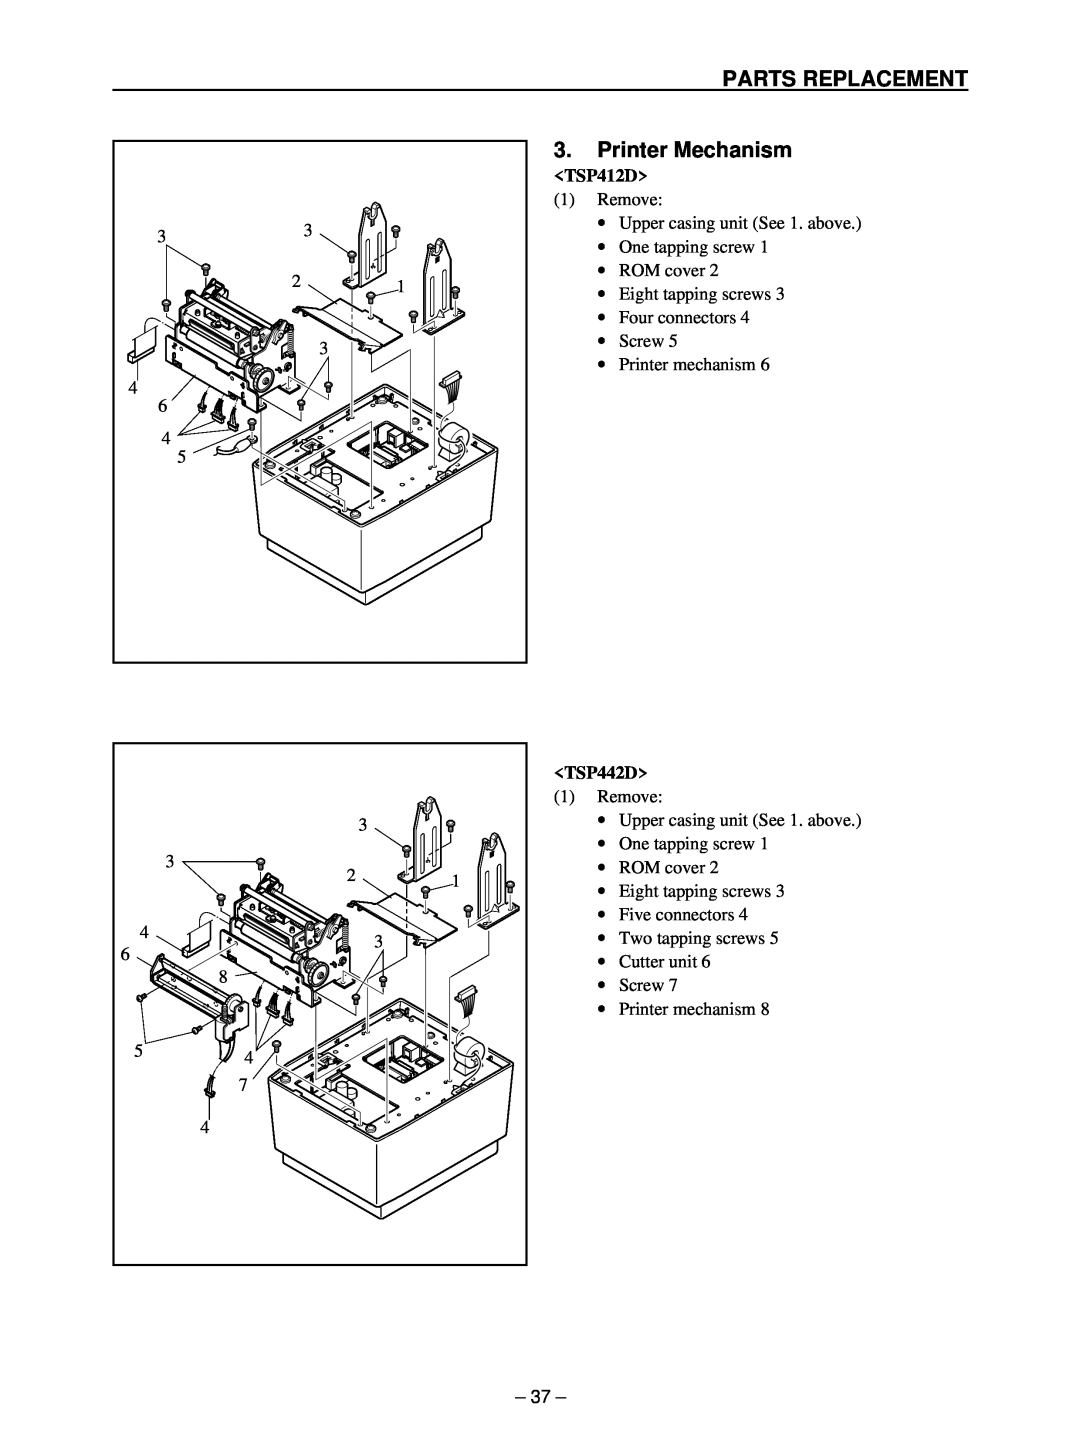 Star Micronics TSP400 technical manual Printer Mechanism, Parts Replacement, TSP412D, TSP442D 